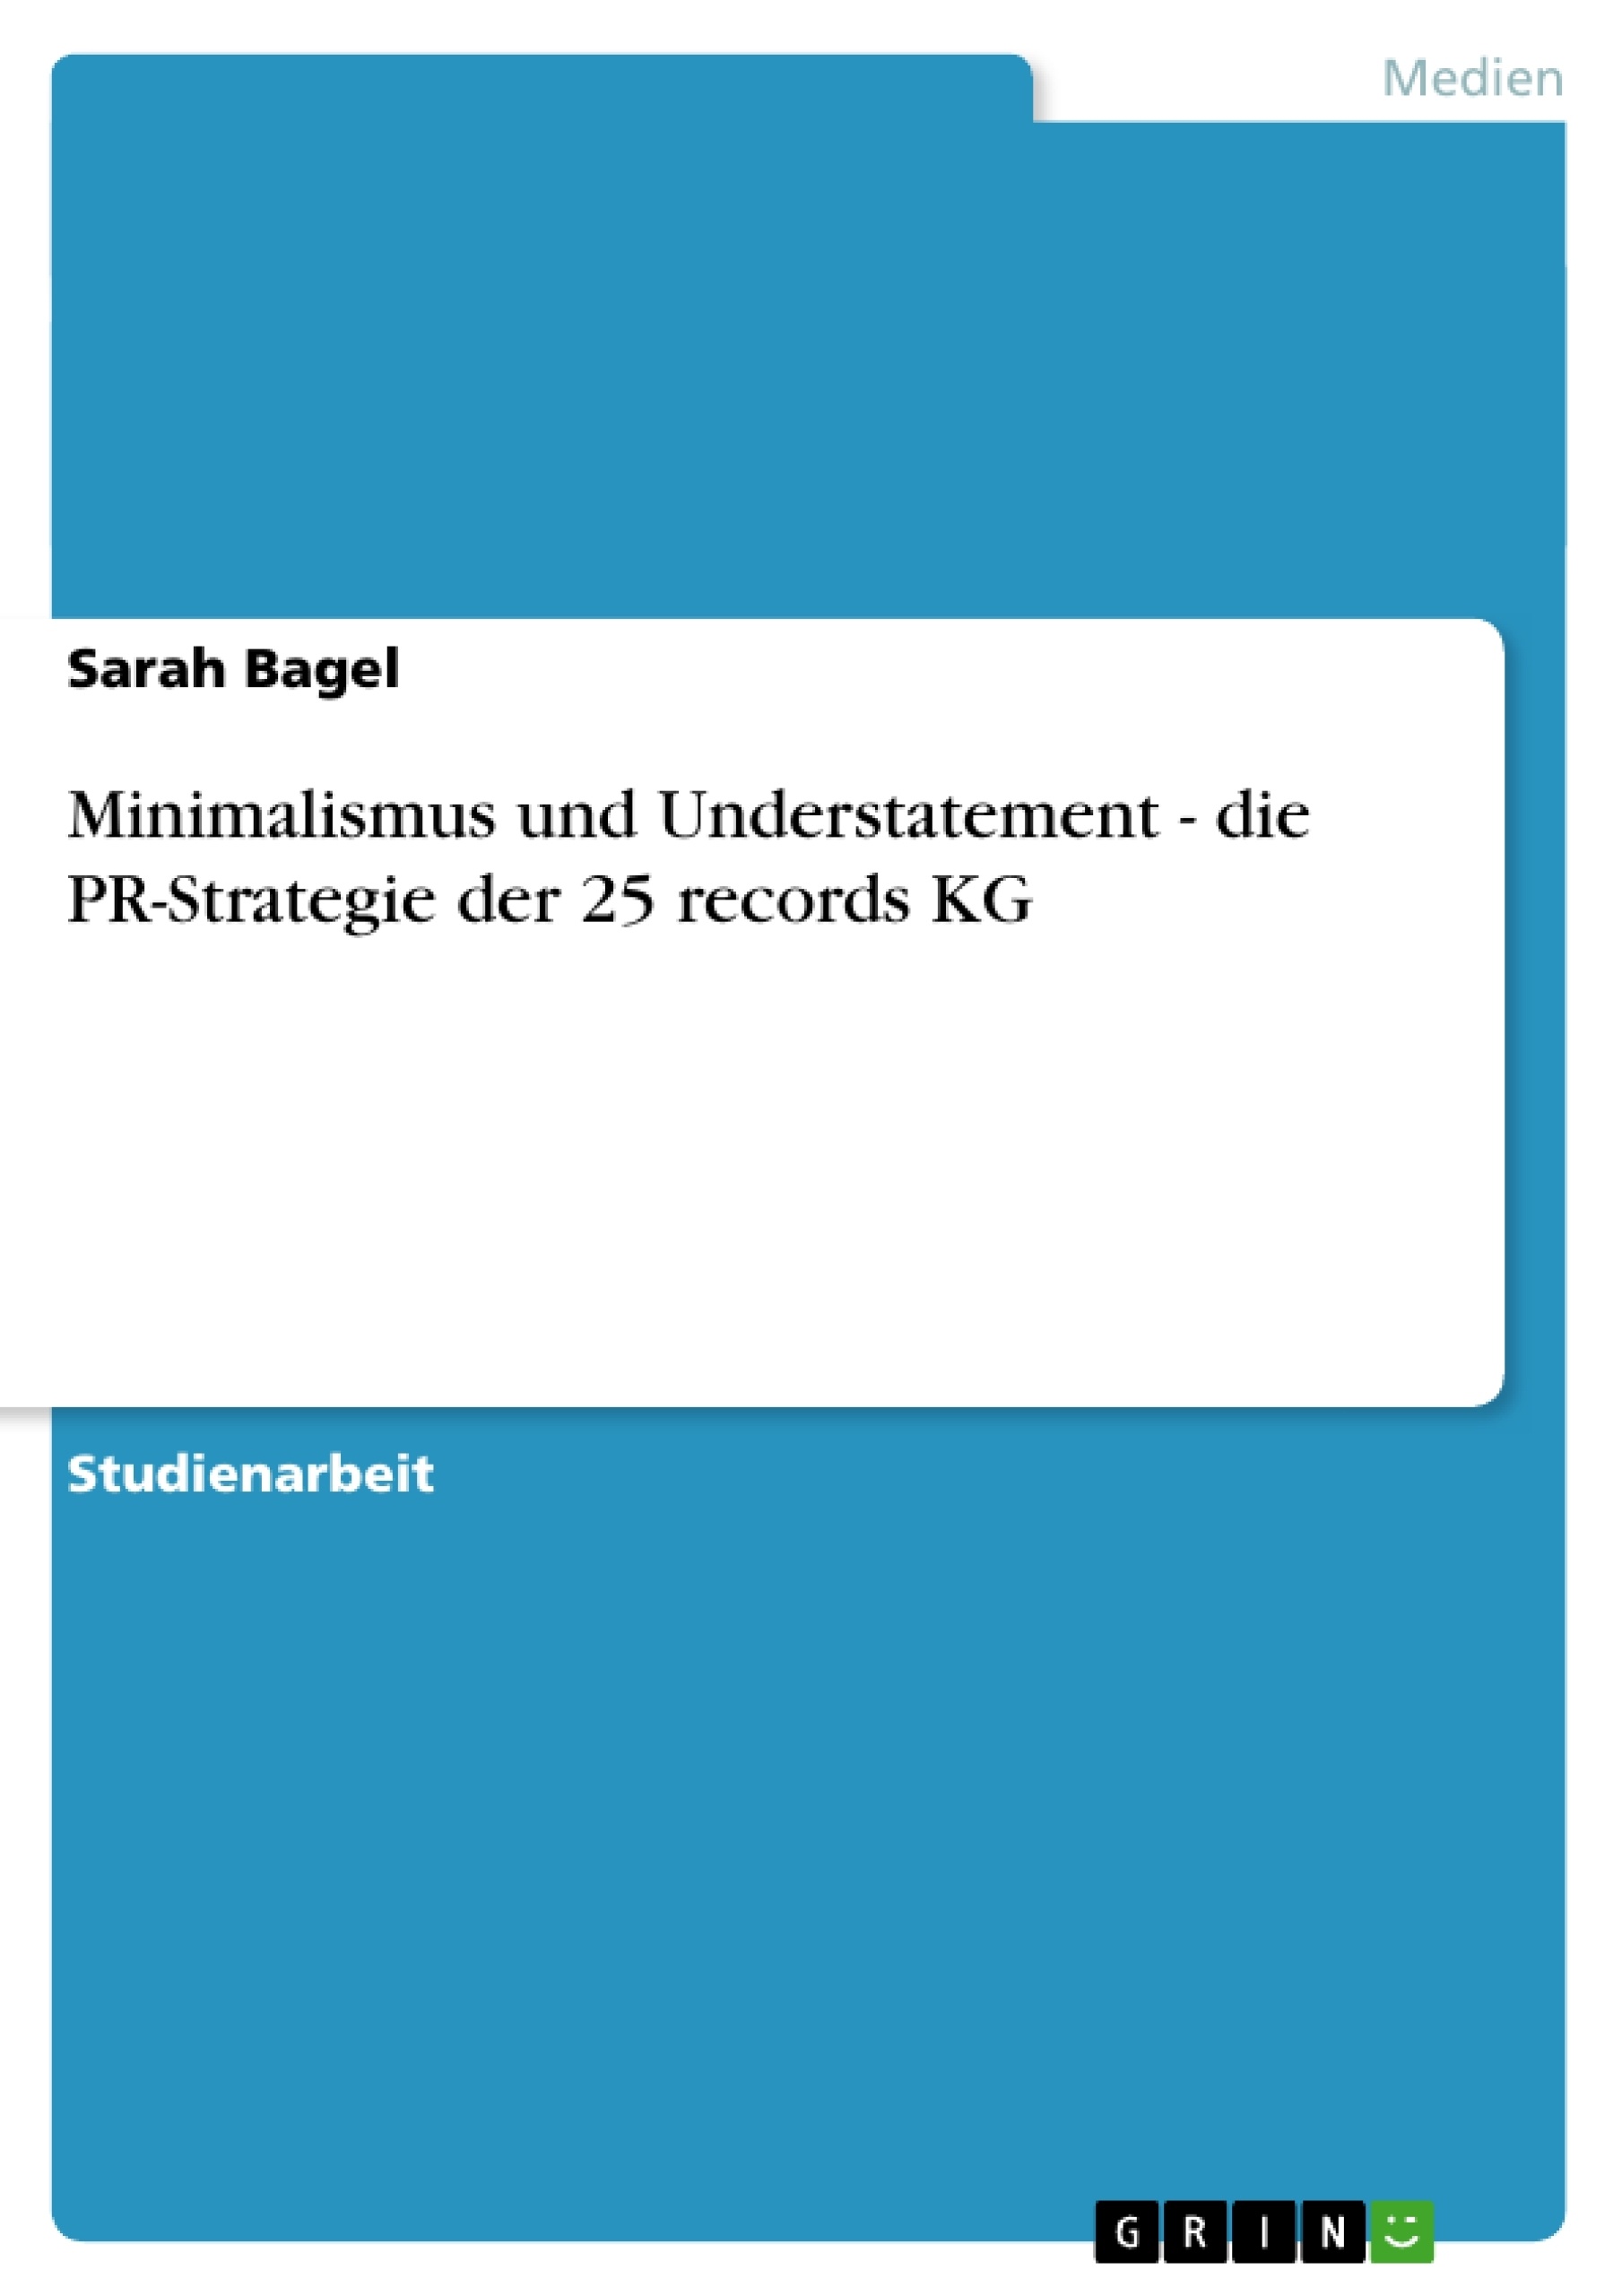 Title: Minimalismus und Understatement - die PR-Strategie der 25 records KG